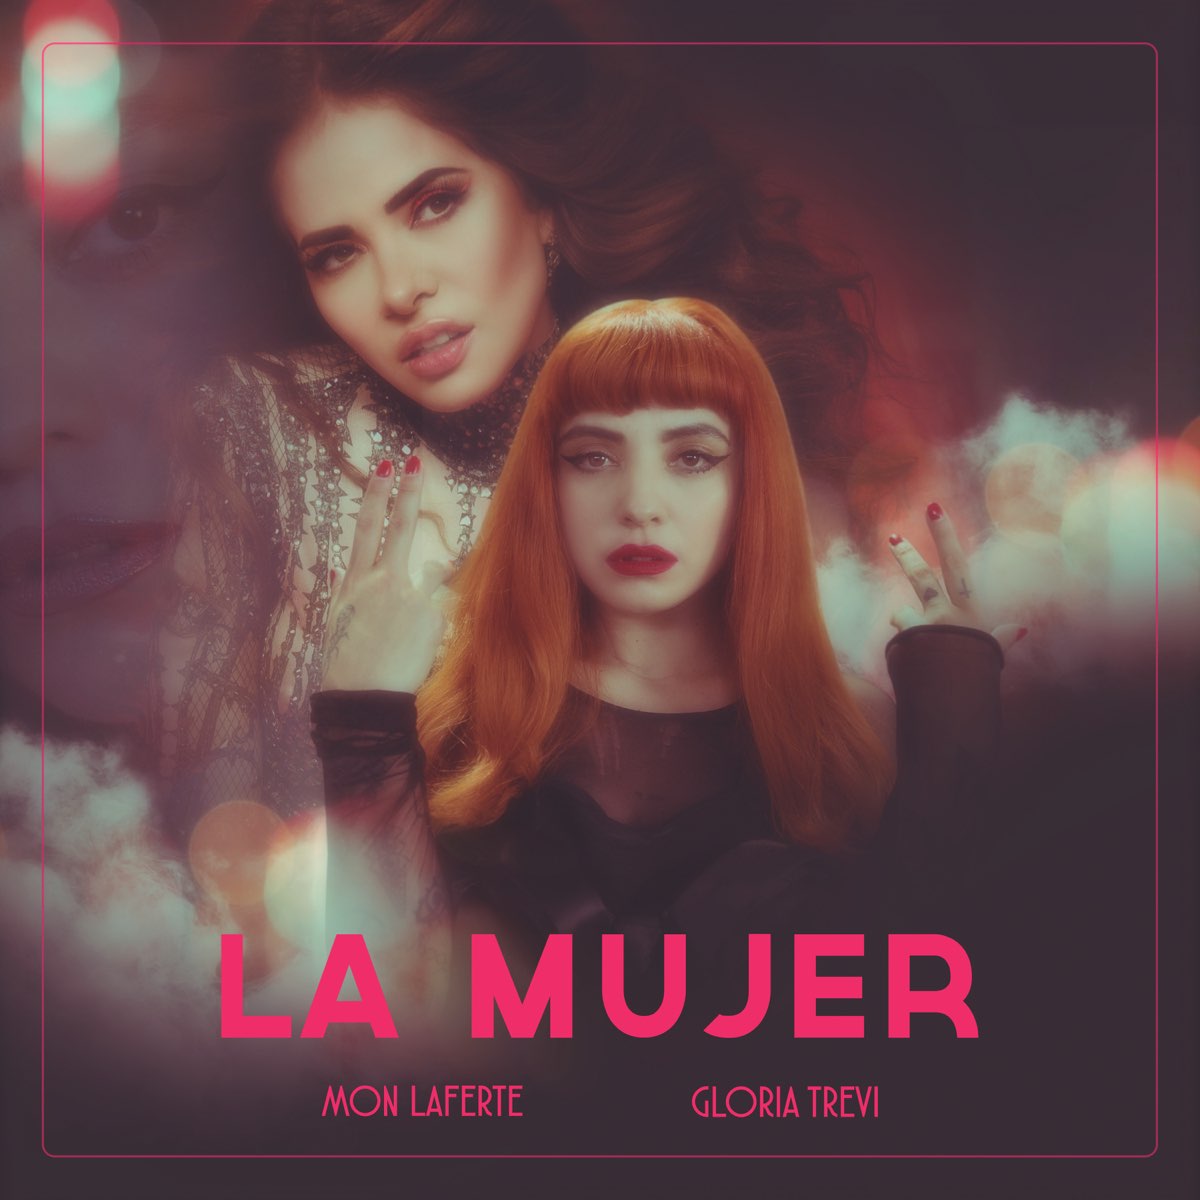 La Mujer - Single de Mon Laferte & Gloria Trevi en Apple Music